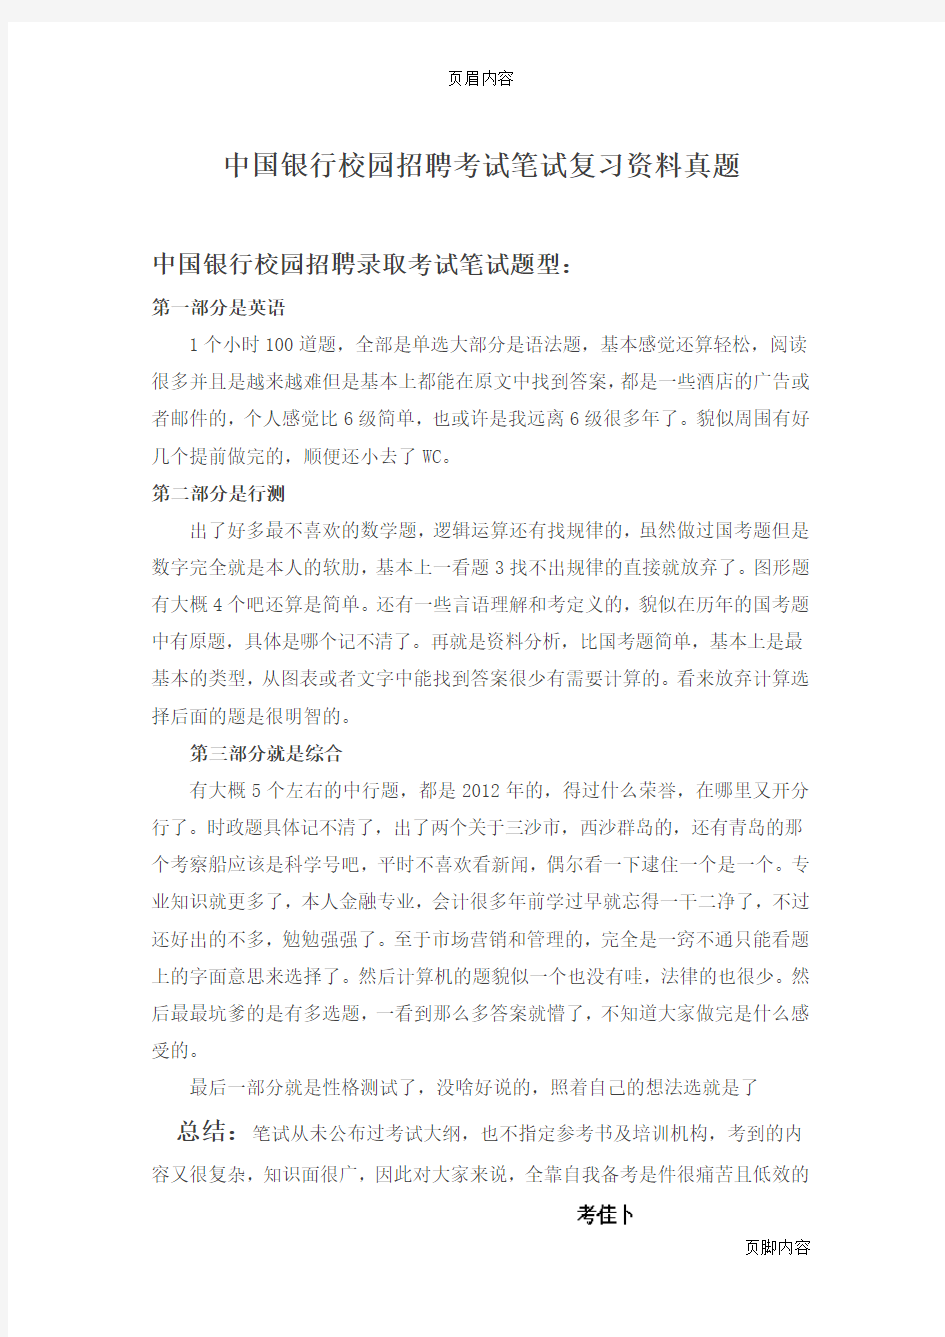 中国银行招聘考试笔试题目试卷--历年考试真题